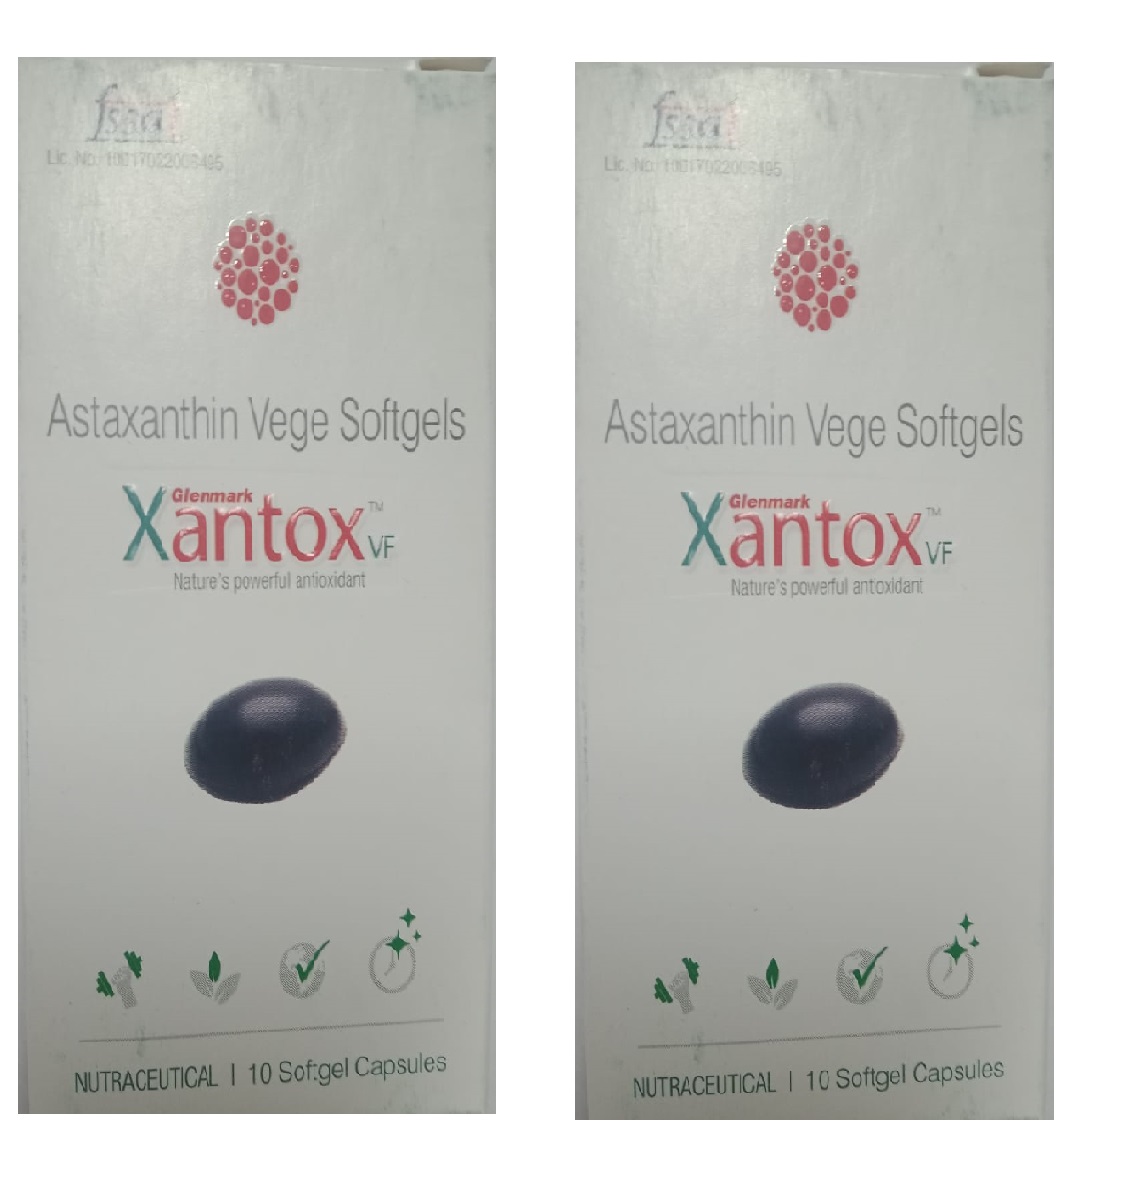 Glenmark Xantox VF Sunscreen Antioxident Supplement for Skin -10 Caps Pack Of 2